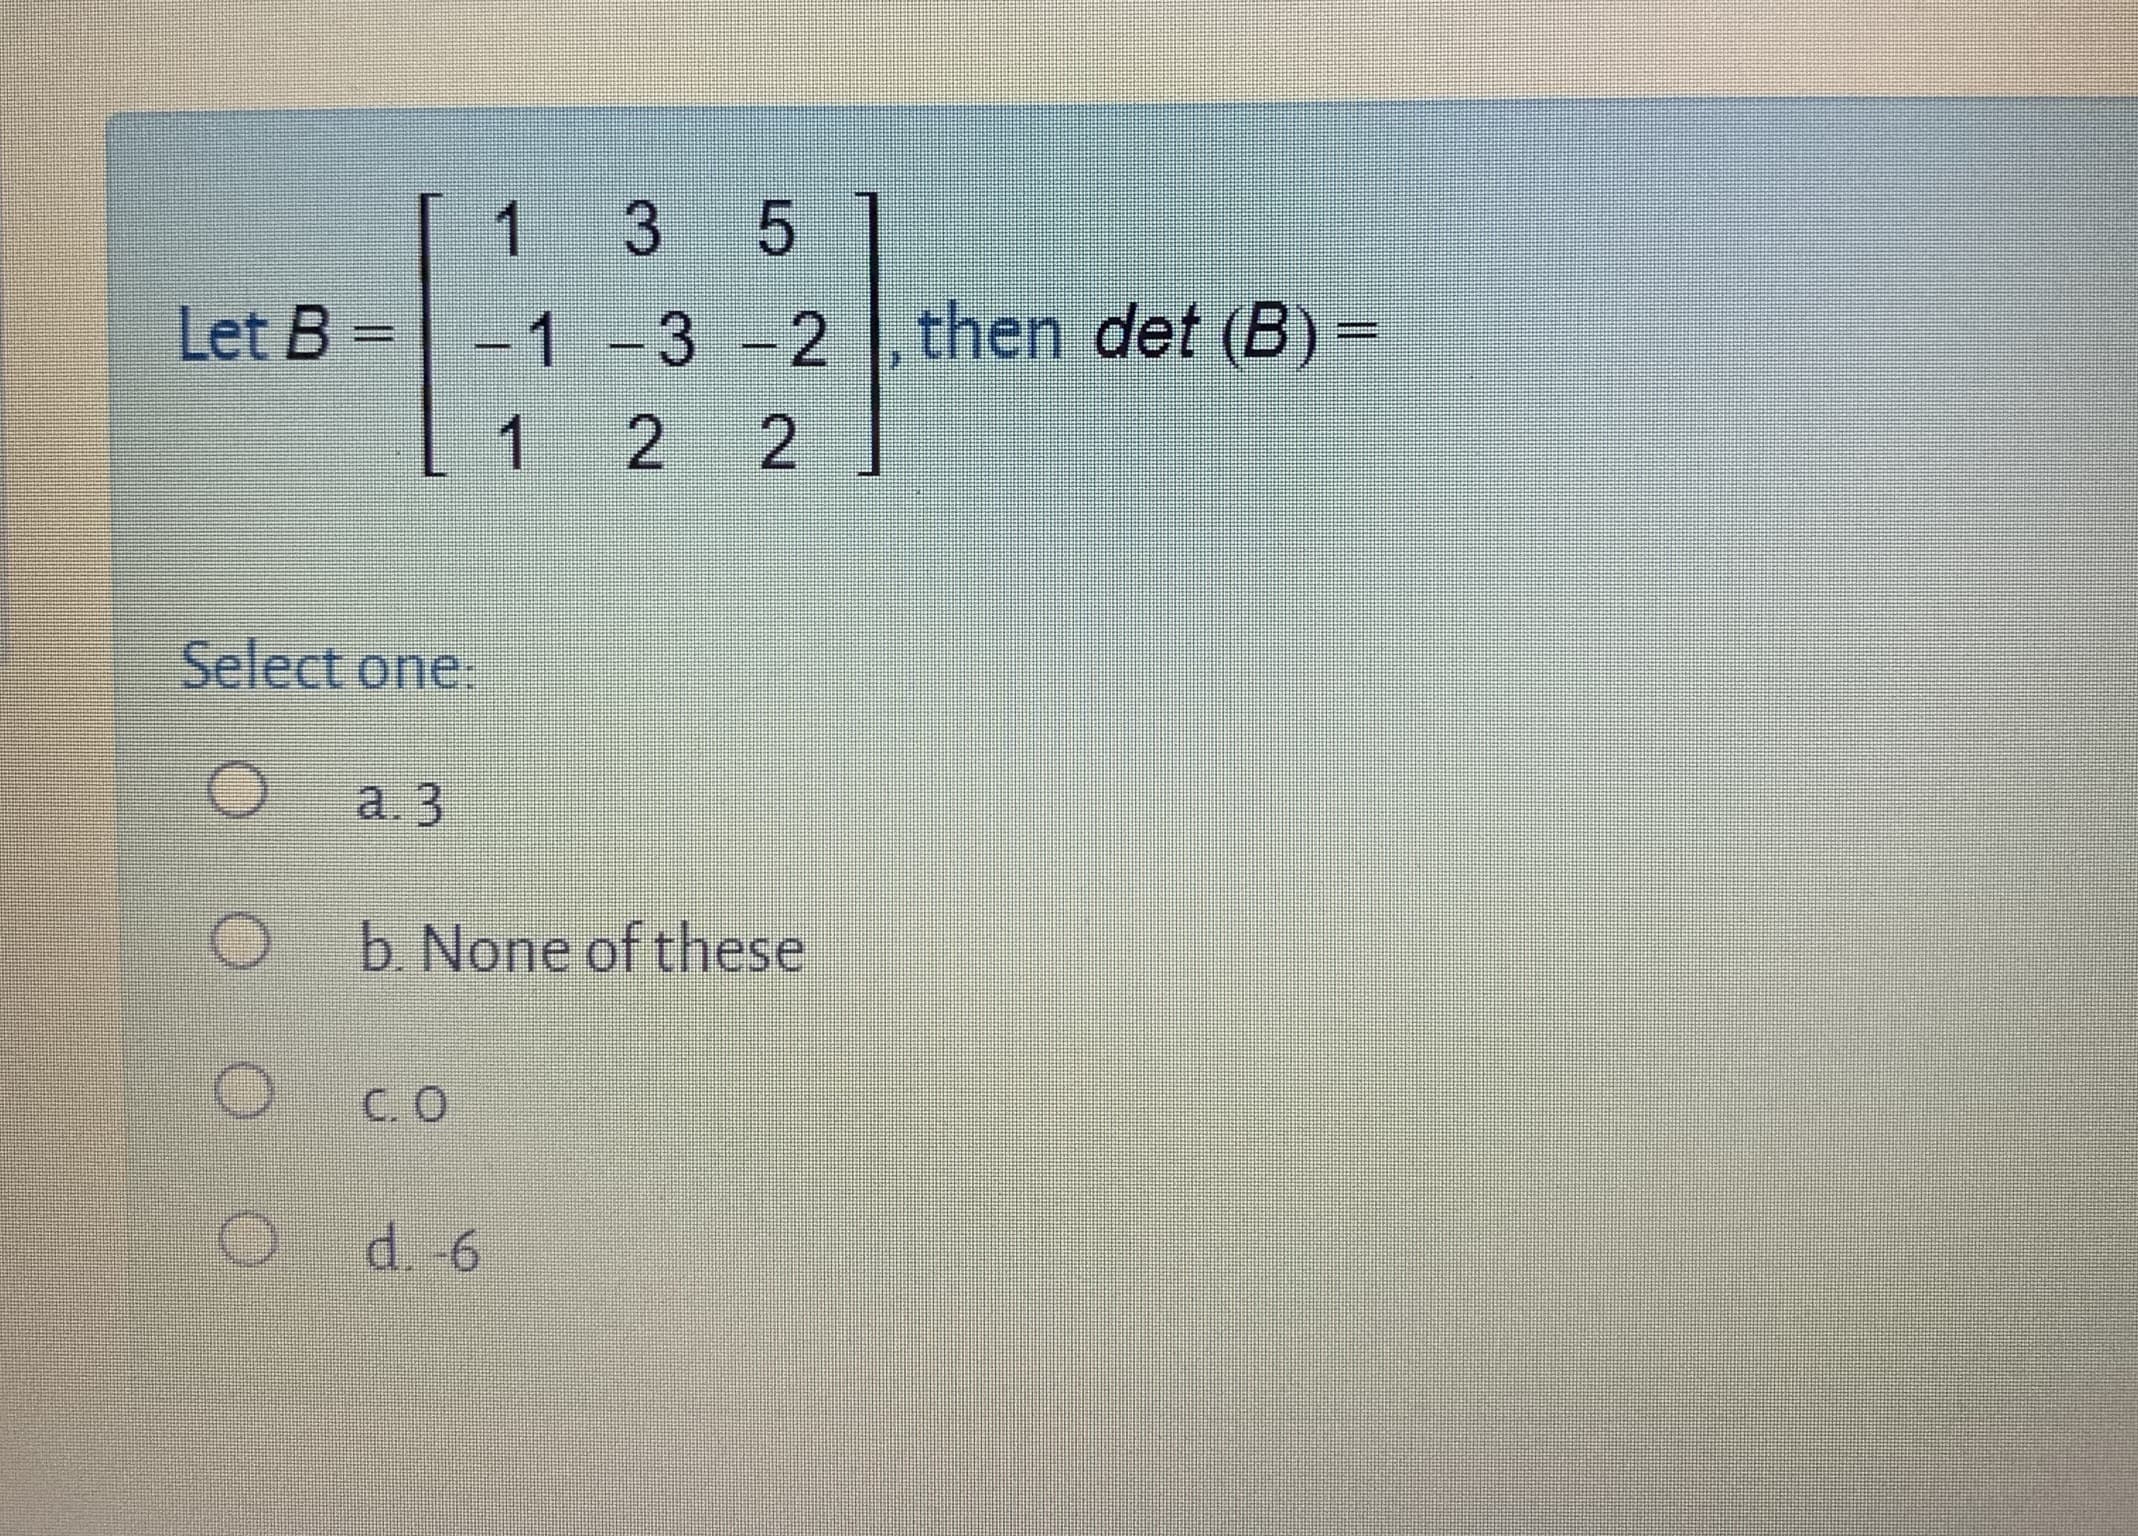 1 35
1-3 -2 , then det (B) =
2 2
Let B =
